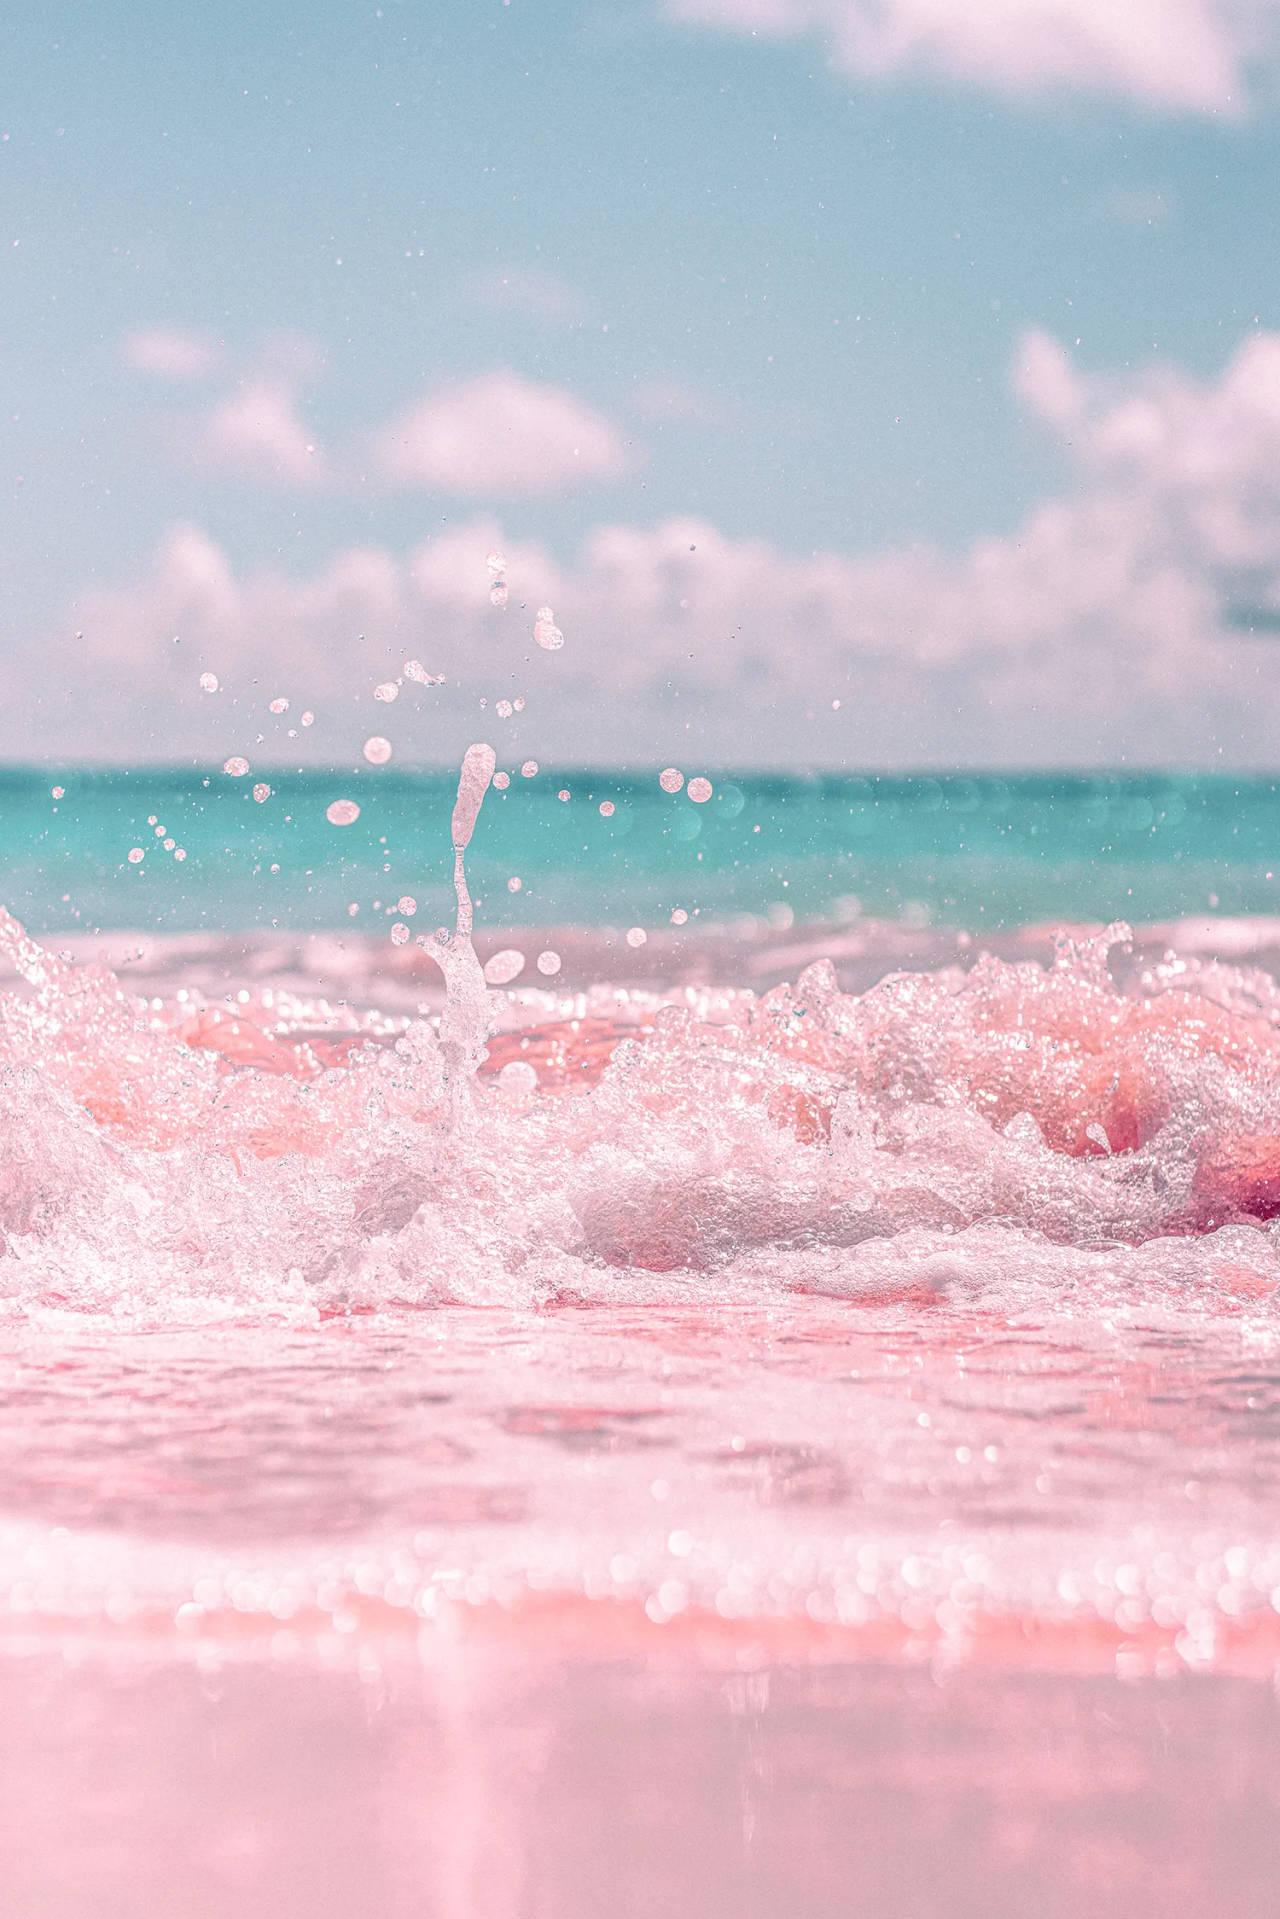 Download Pink Beach Sand Summer Iphone Wallpaper